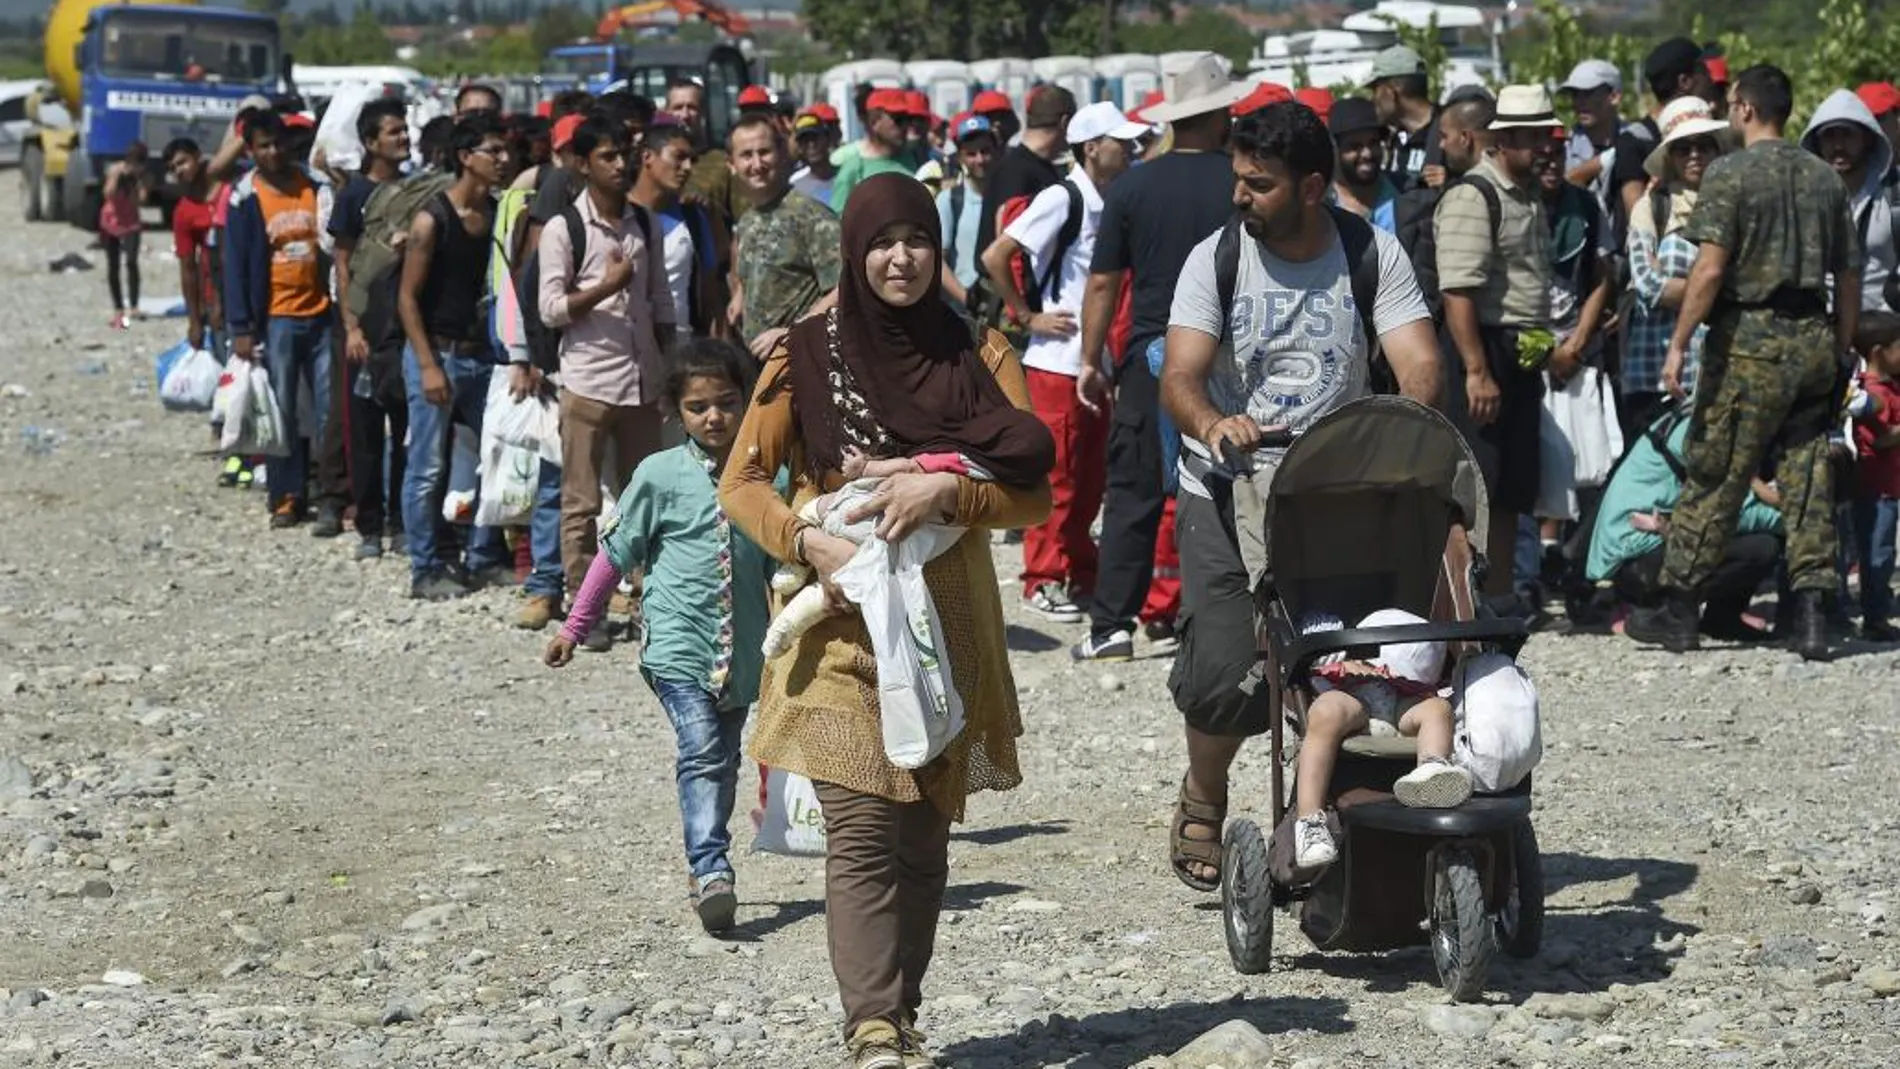 Inmigrantes se disponen a subir a un tren en Gevgelija (Macedonia) hoy 25 de agosto de 2015.